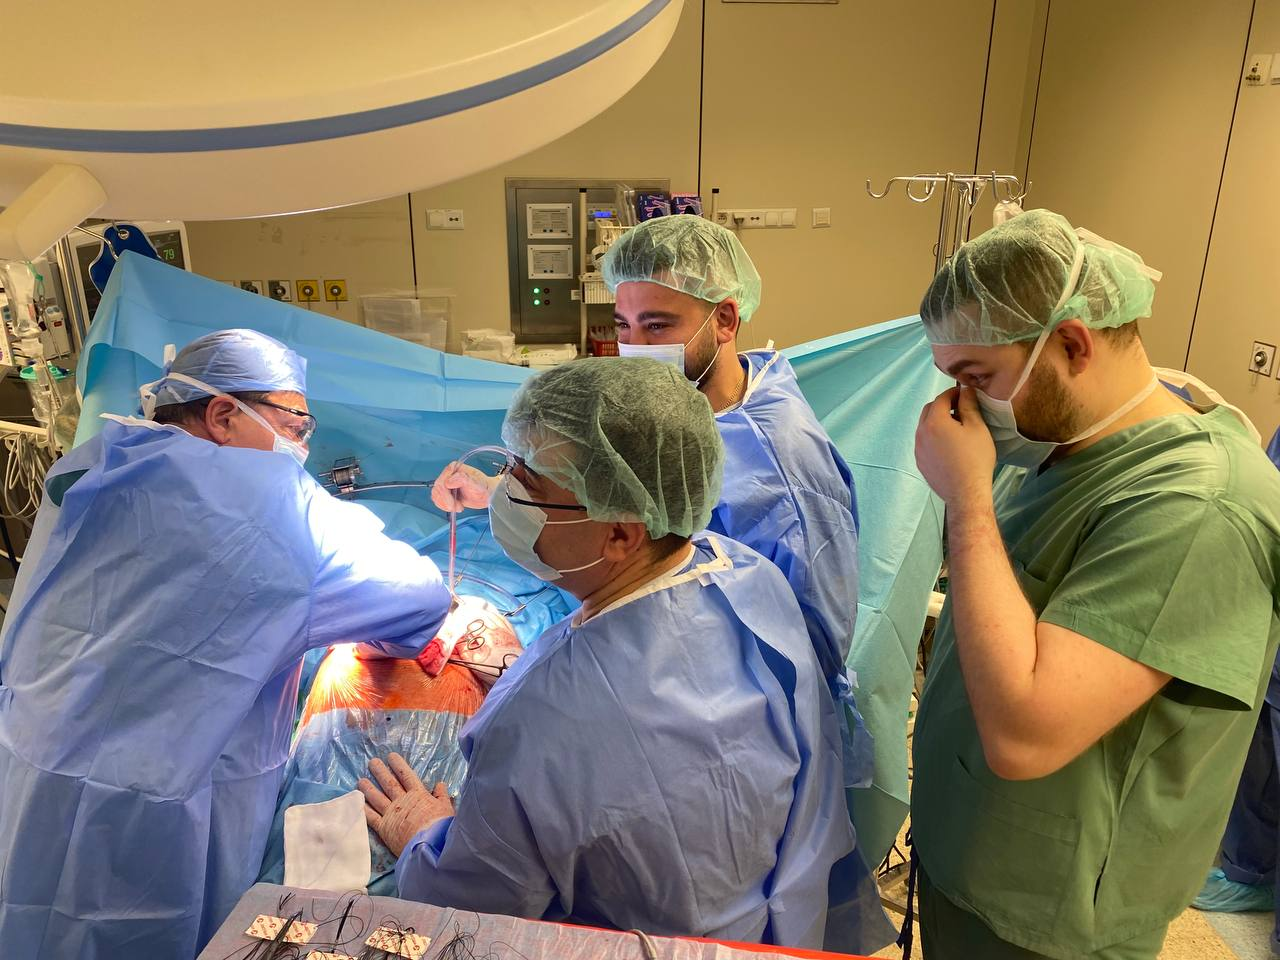 У Варшаві волинські хірурги вчилися трансплантувати печінку (фото 18+)